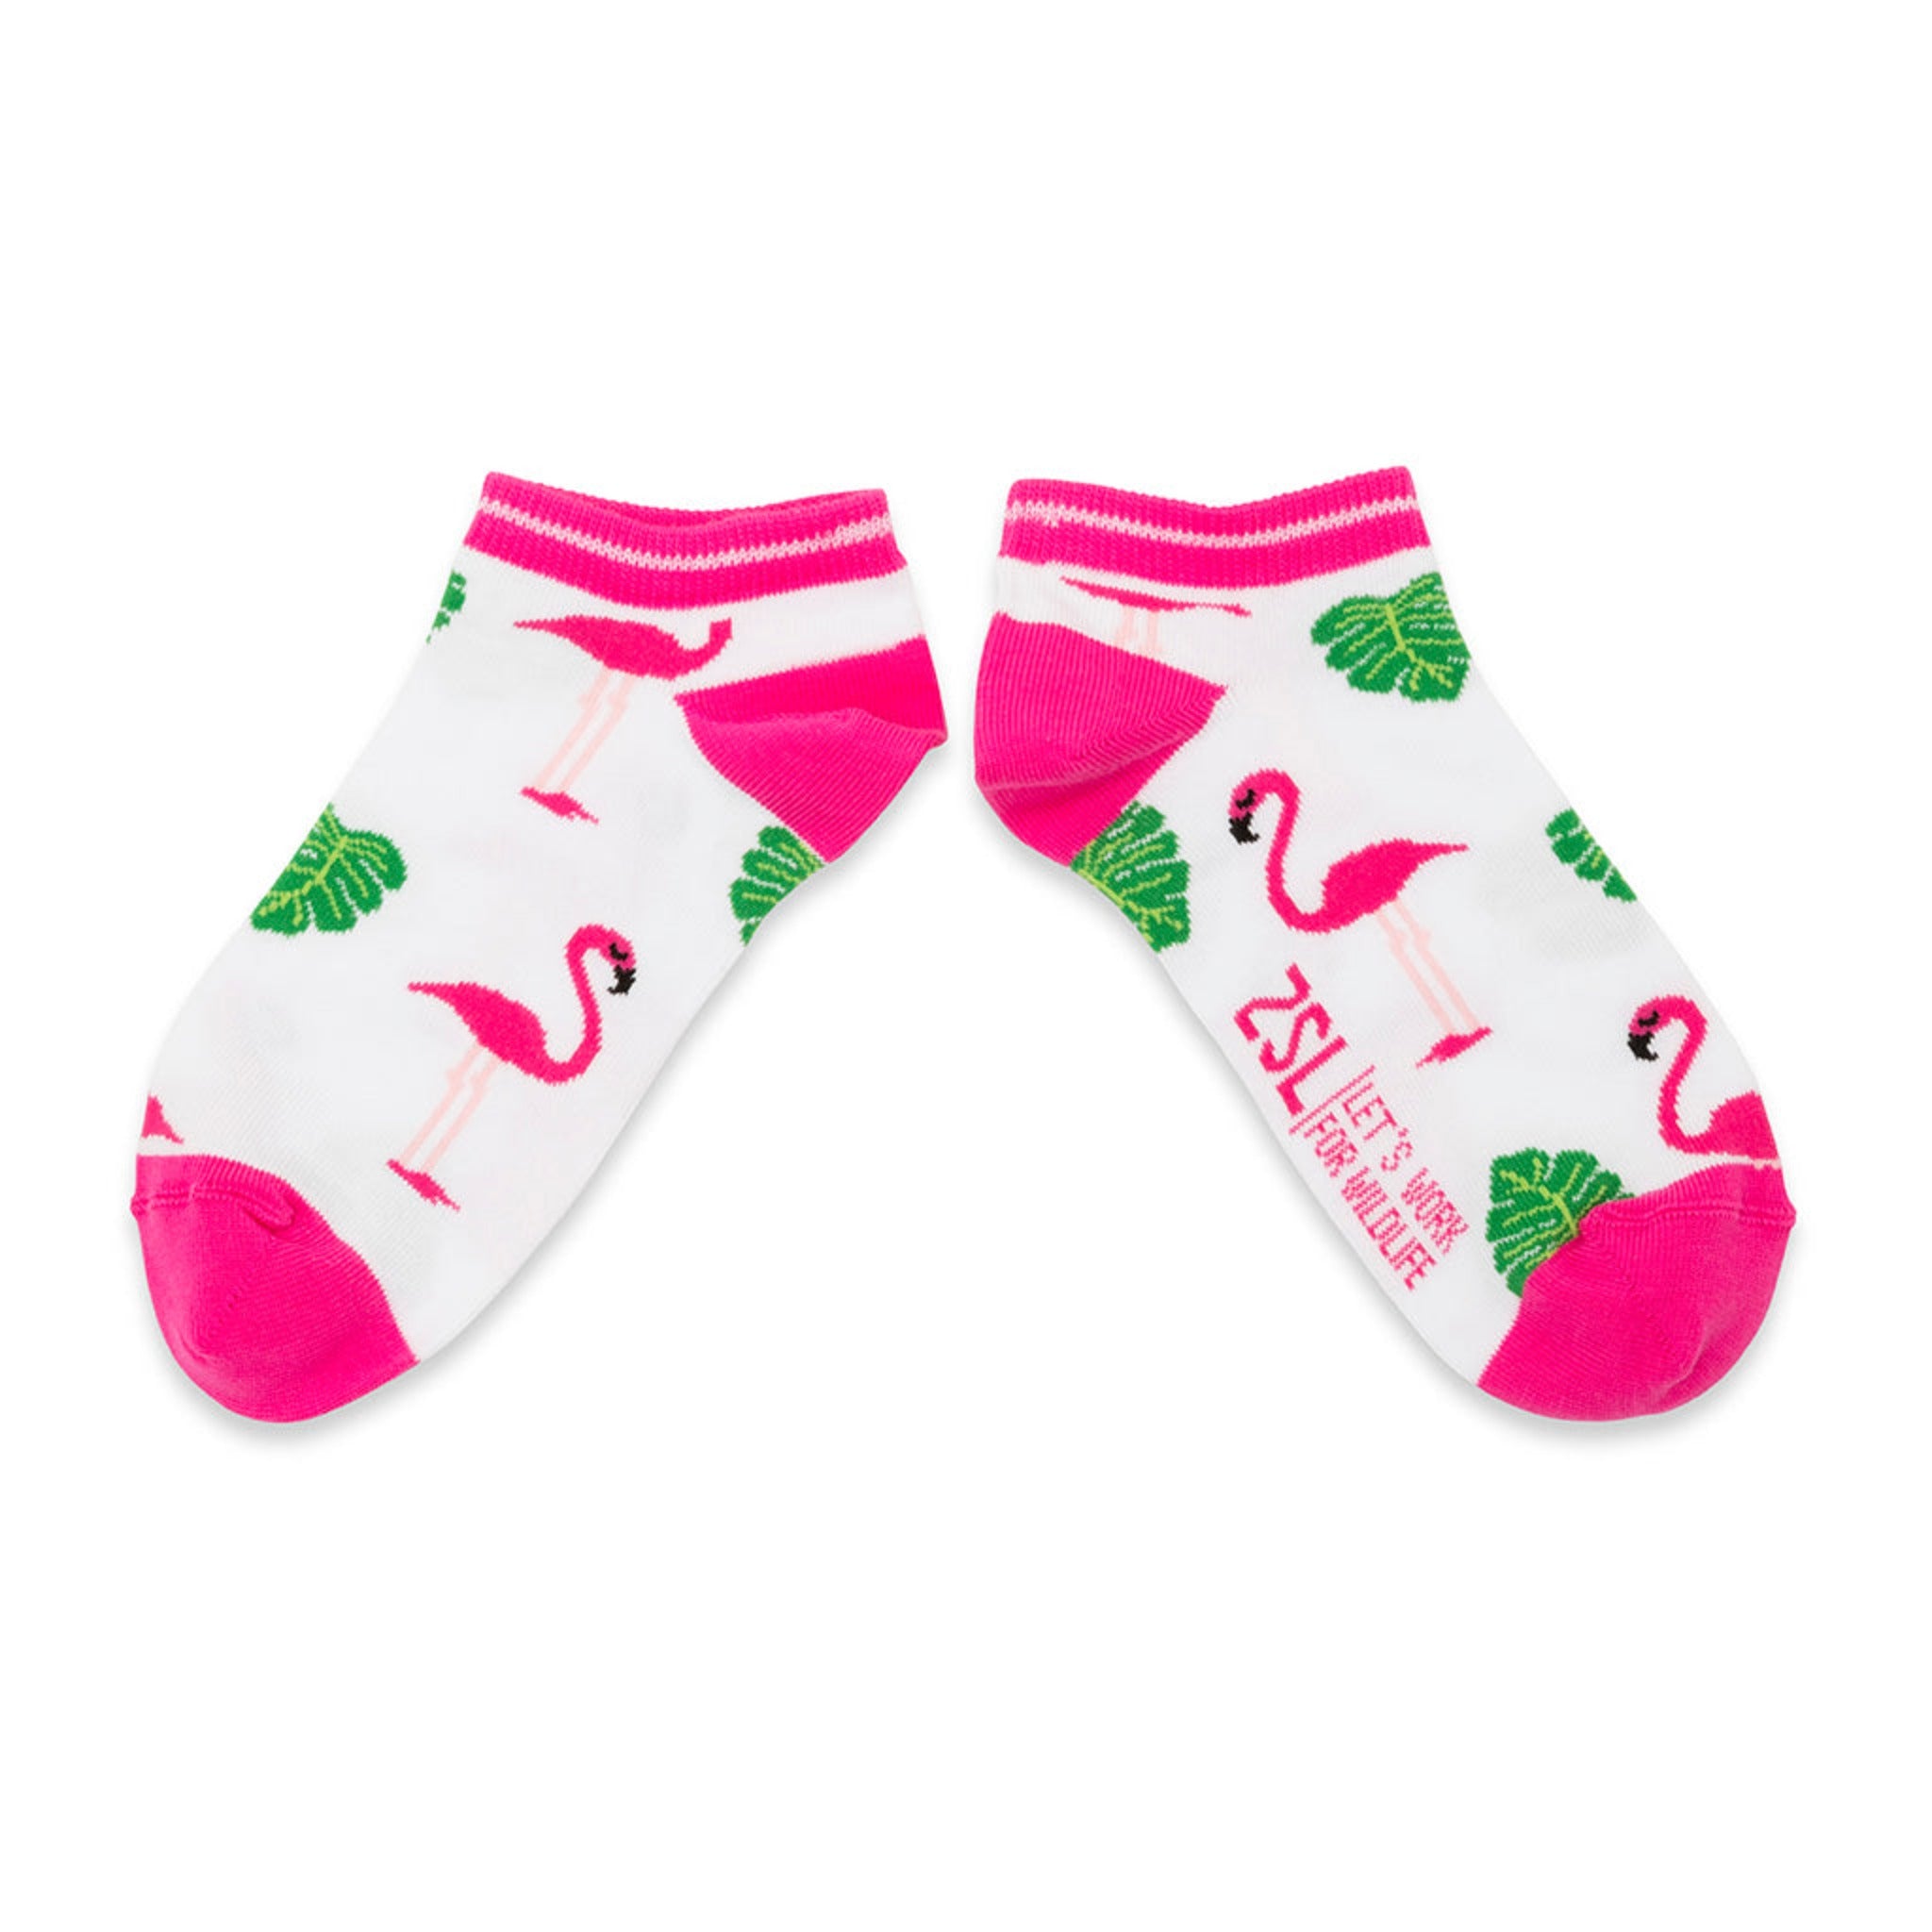 Ladies flamingo ankle socks